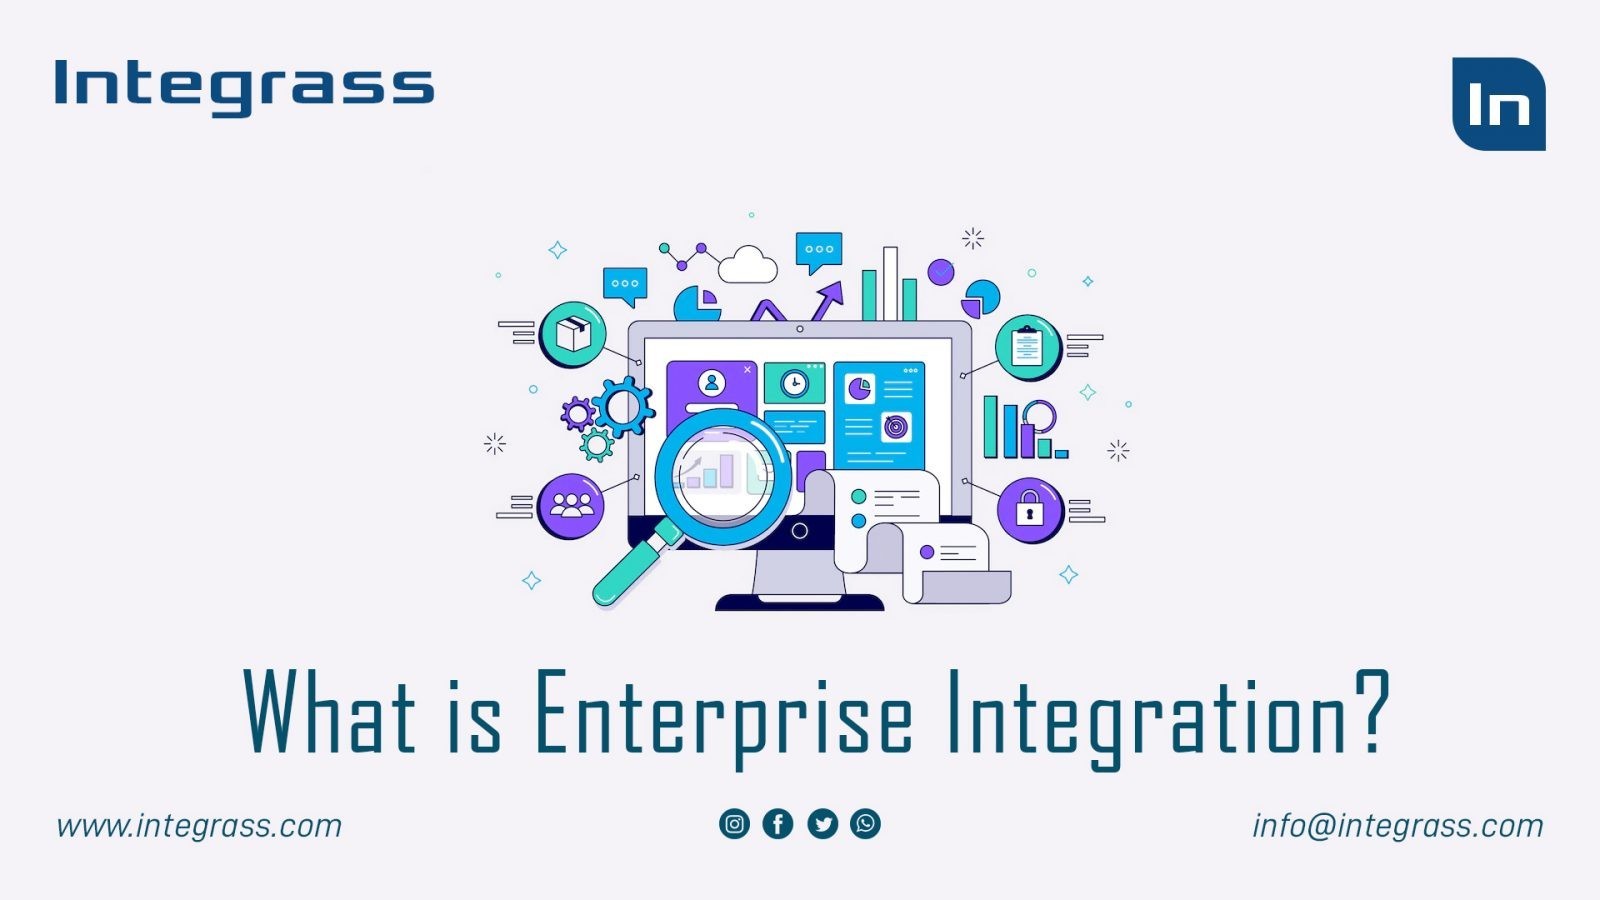 16. Integrass - Enterprise Integration - 19-08-2022